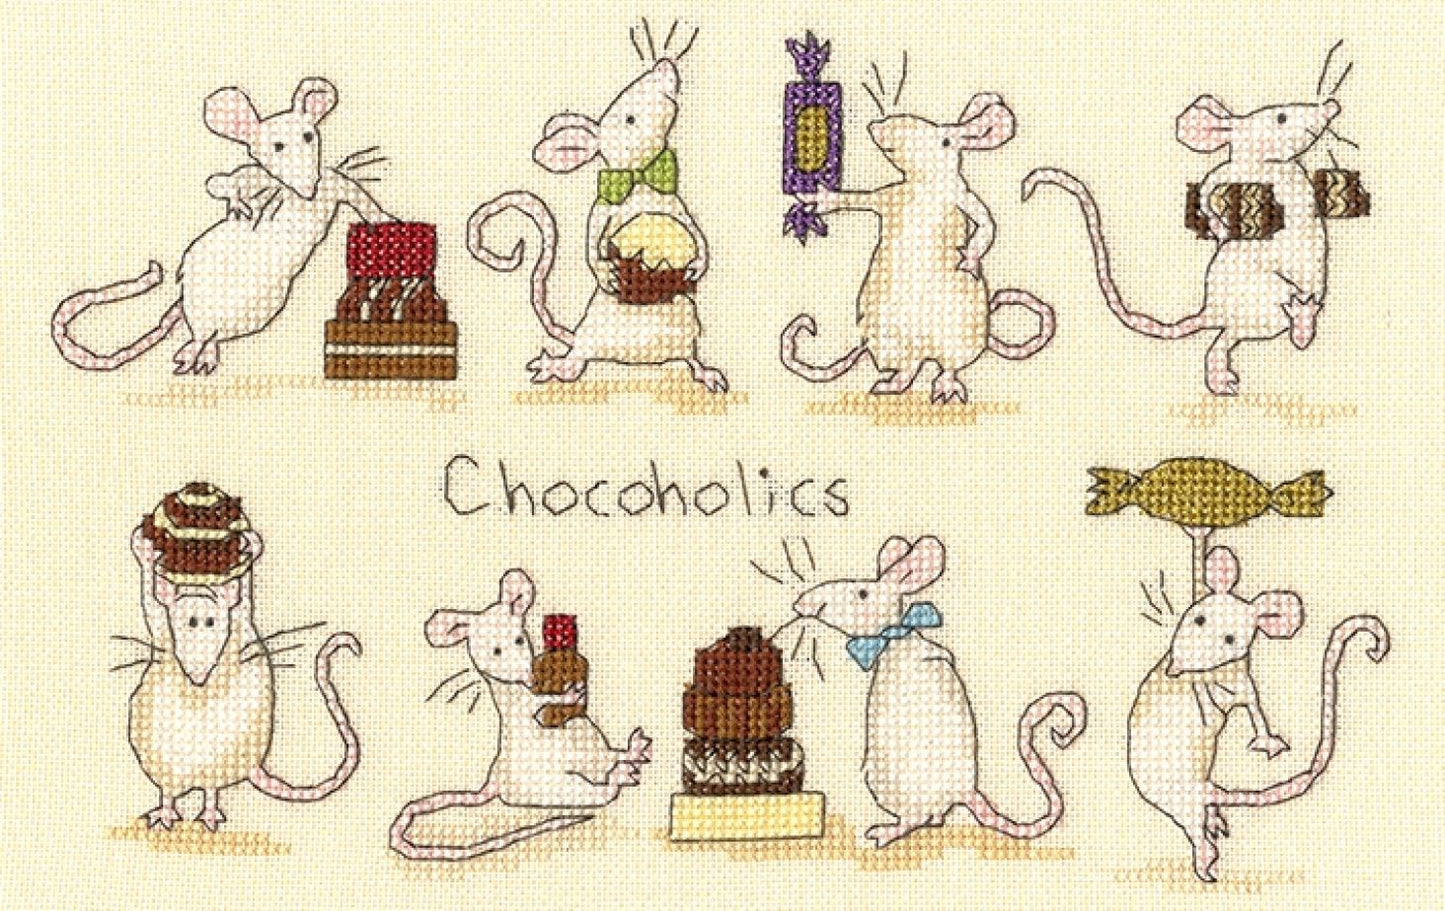 Chocoholics by Anita Jeram